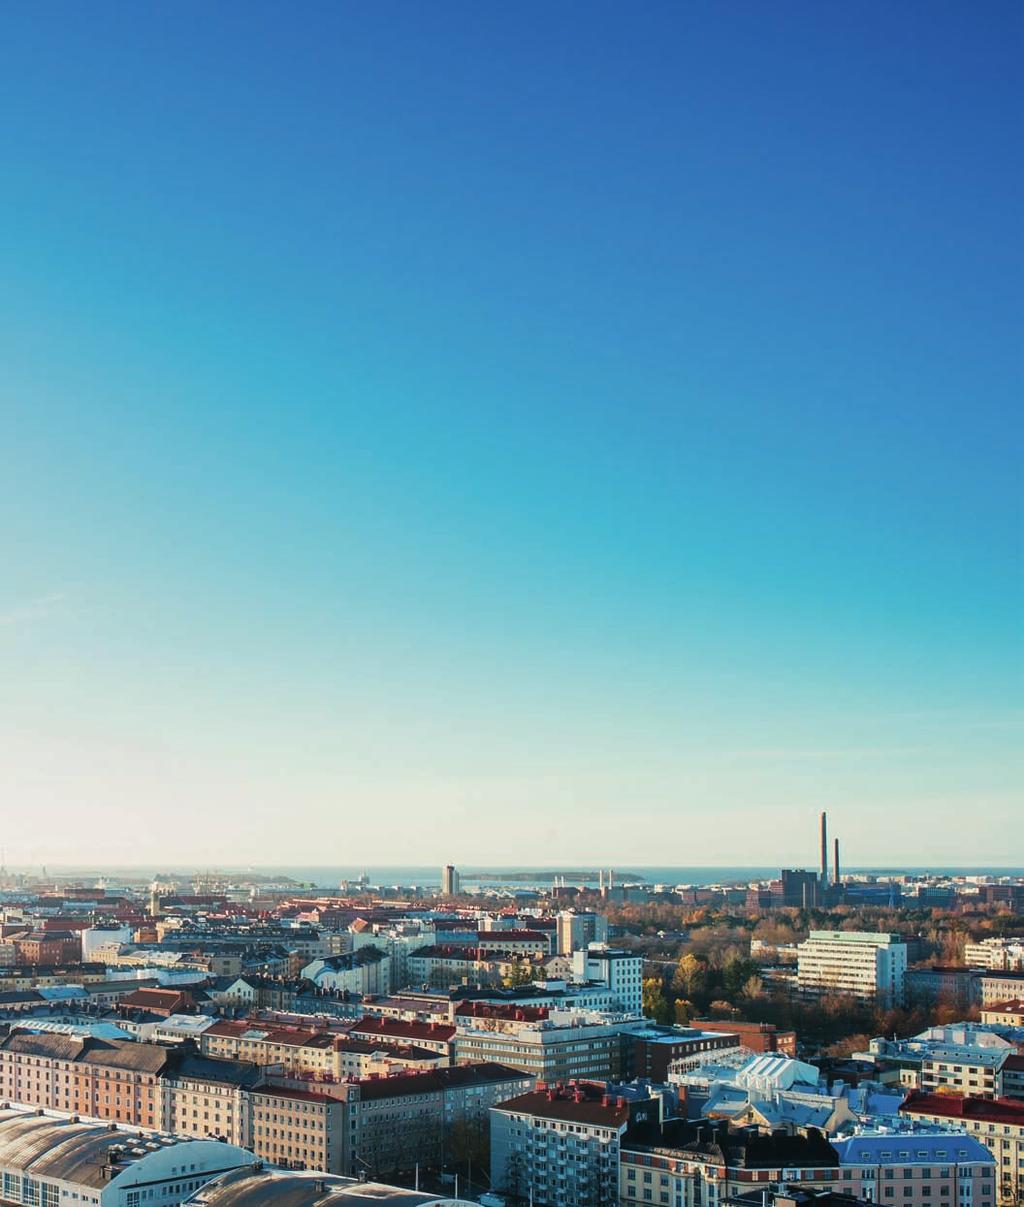 Kolneutralt Helsingfors El 15 % Uppkomsten av utsläpp av växthusgaser i Helsingfors. Uppvärmning 56 % Enligt Helsingfors stadsstrategi 2017 2021 är målet att Helsingfors är kolneutralt år 2035.